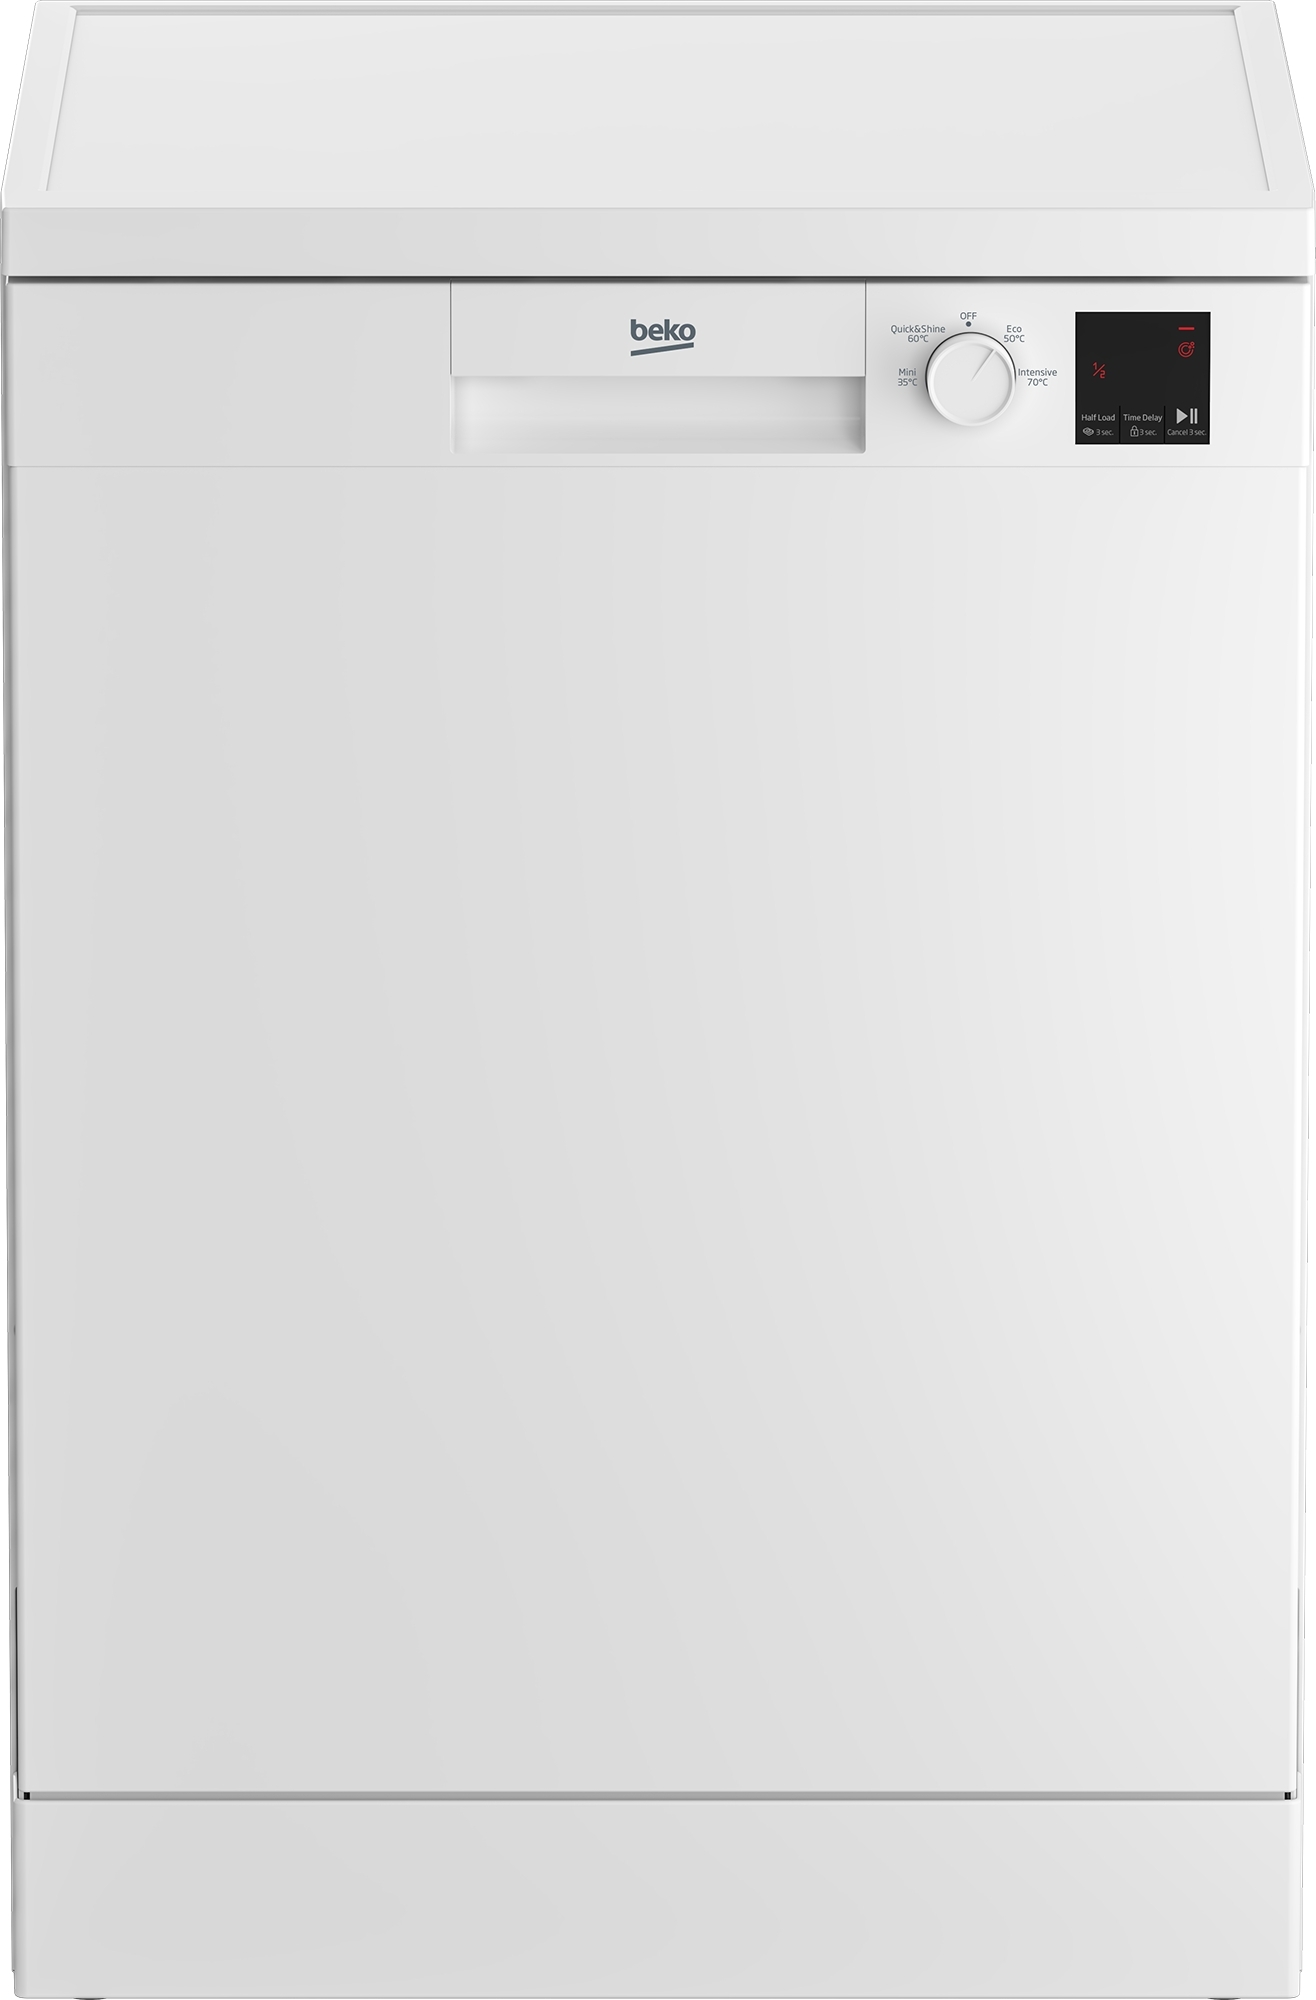 Beko DVN04320W 60cm Freestanding Dishwasher - White